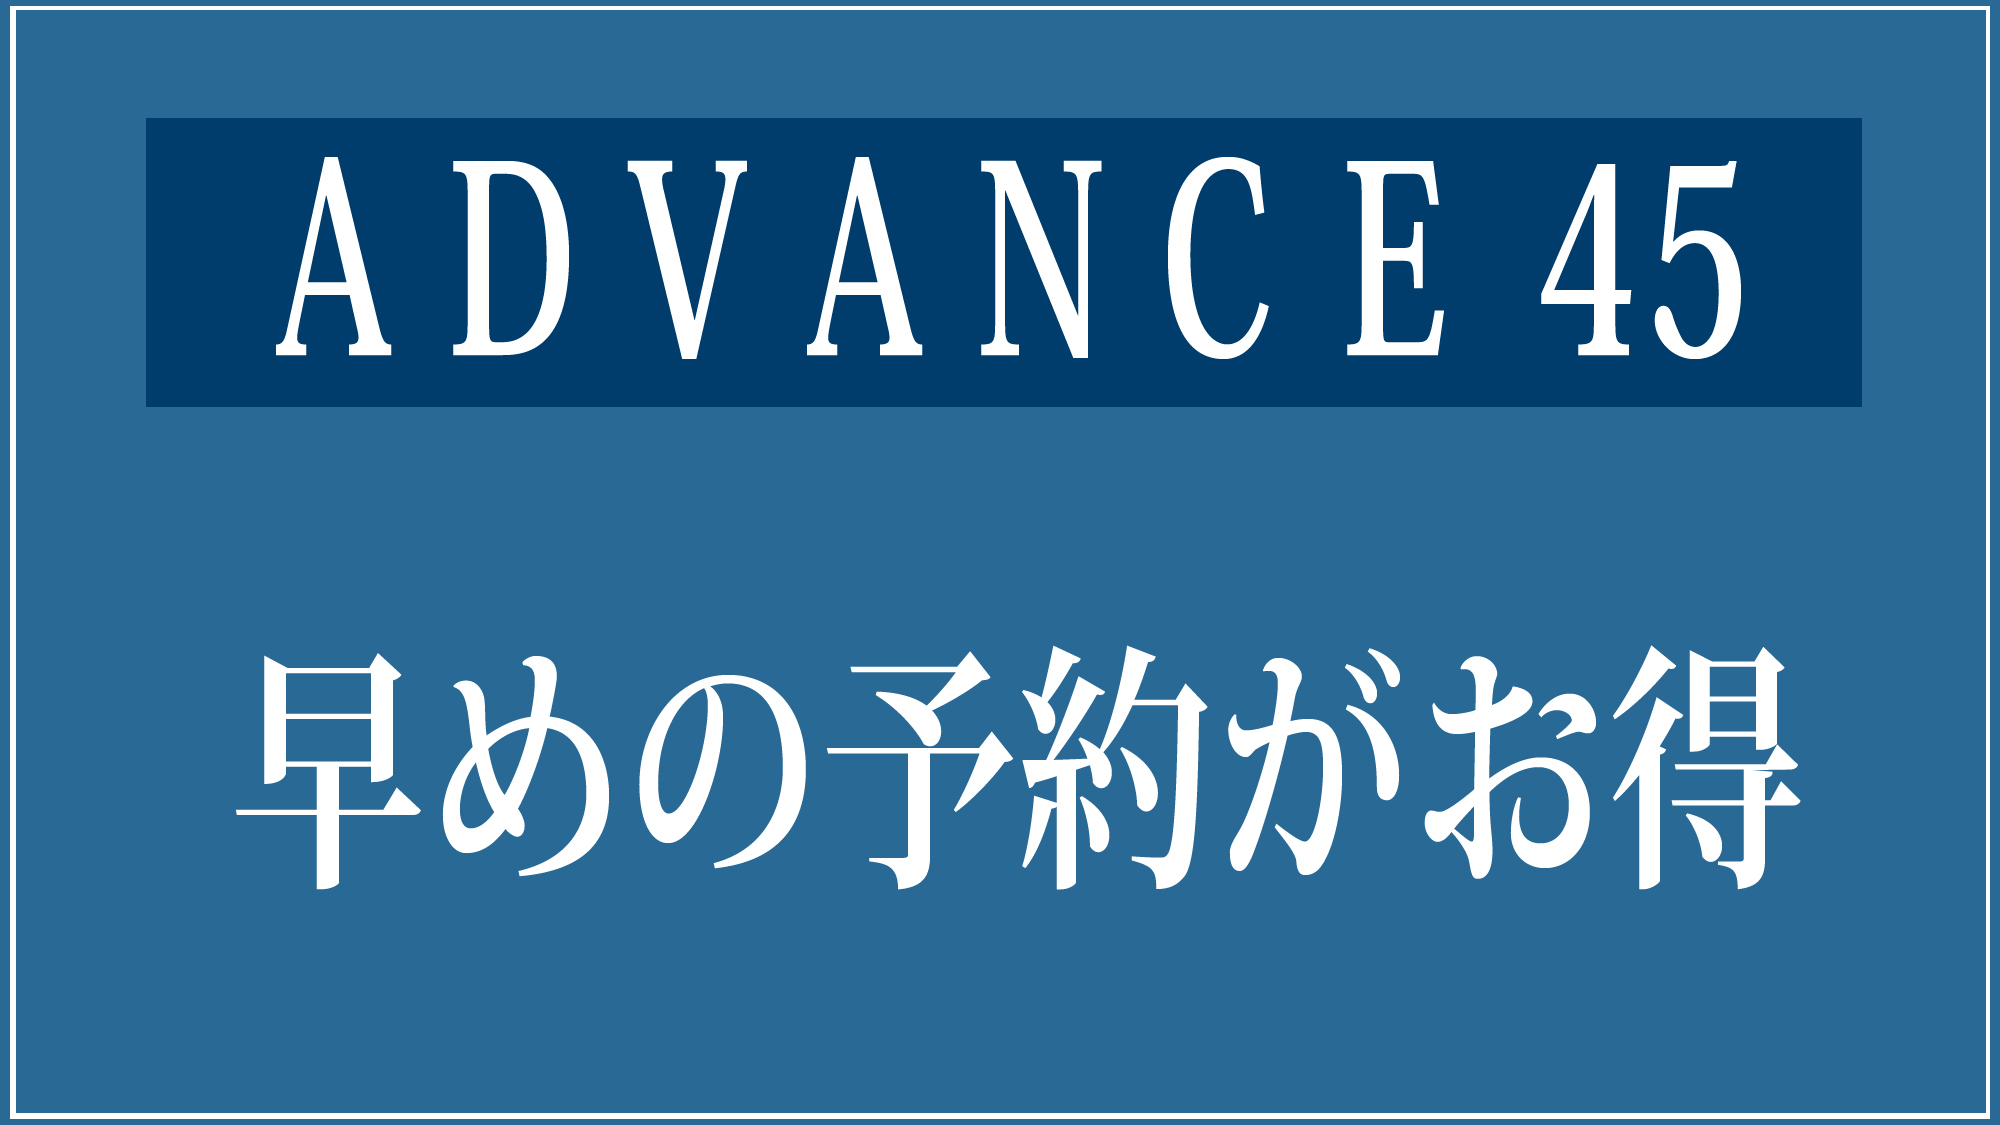 ★【ADVANCE】45☆45日前の早期予約でお得☆素泊りステイプラン【さき楽】